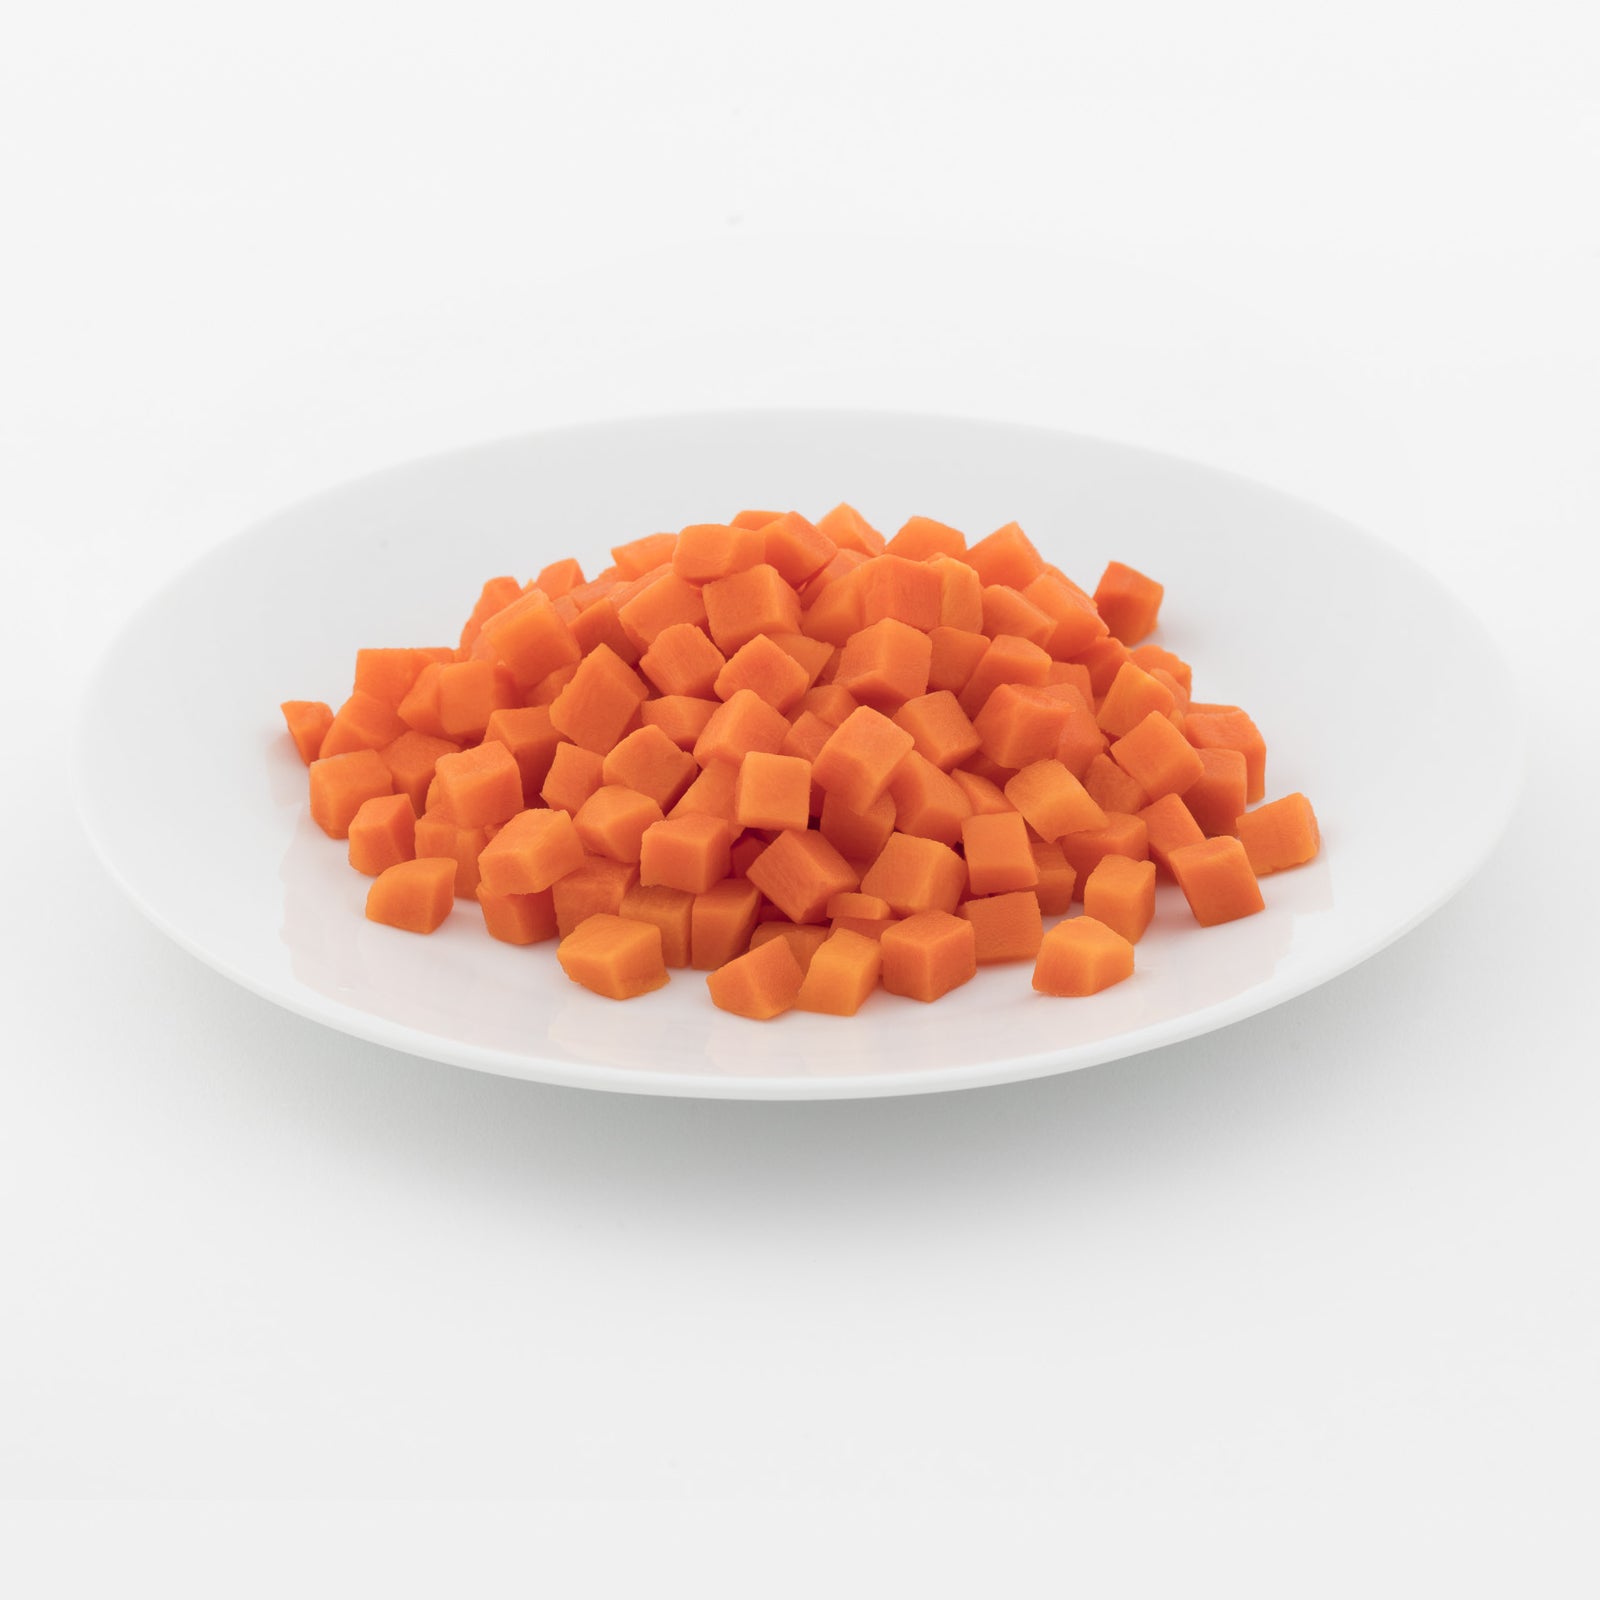 BELOW ZERO Diced carrots